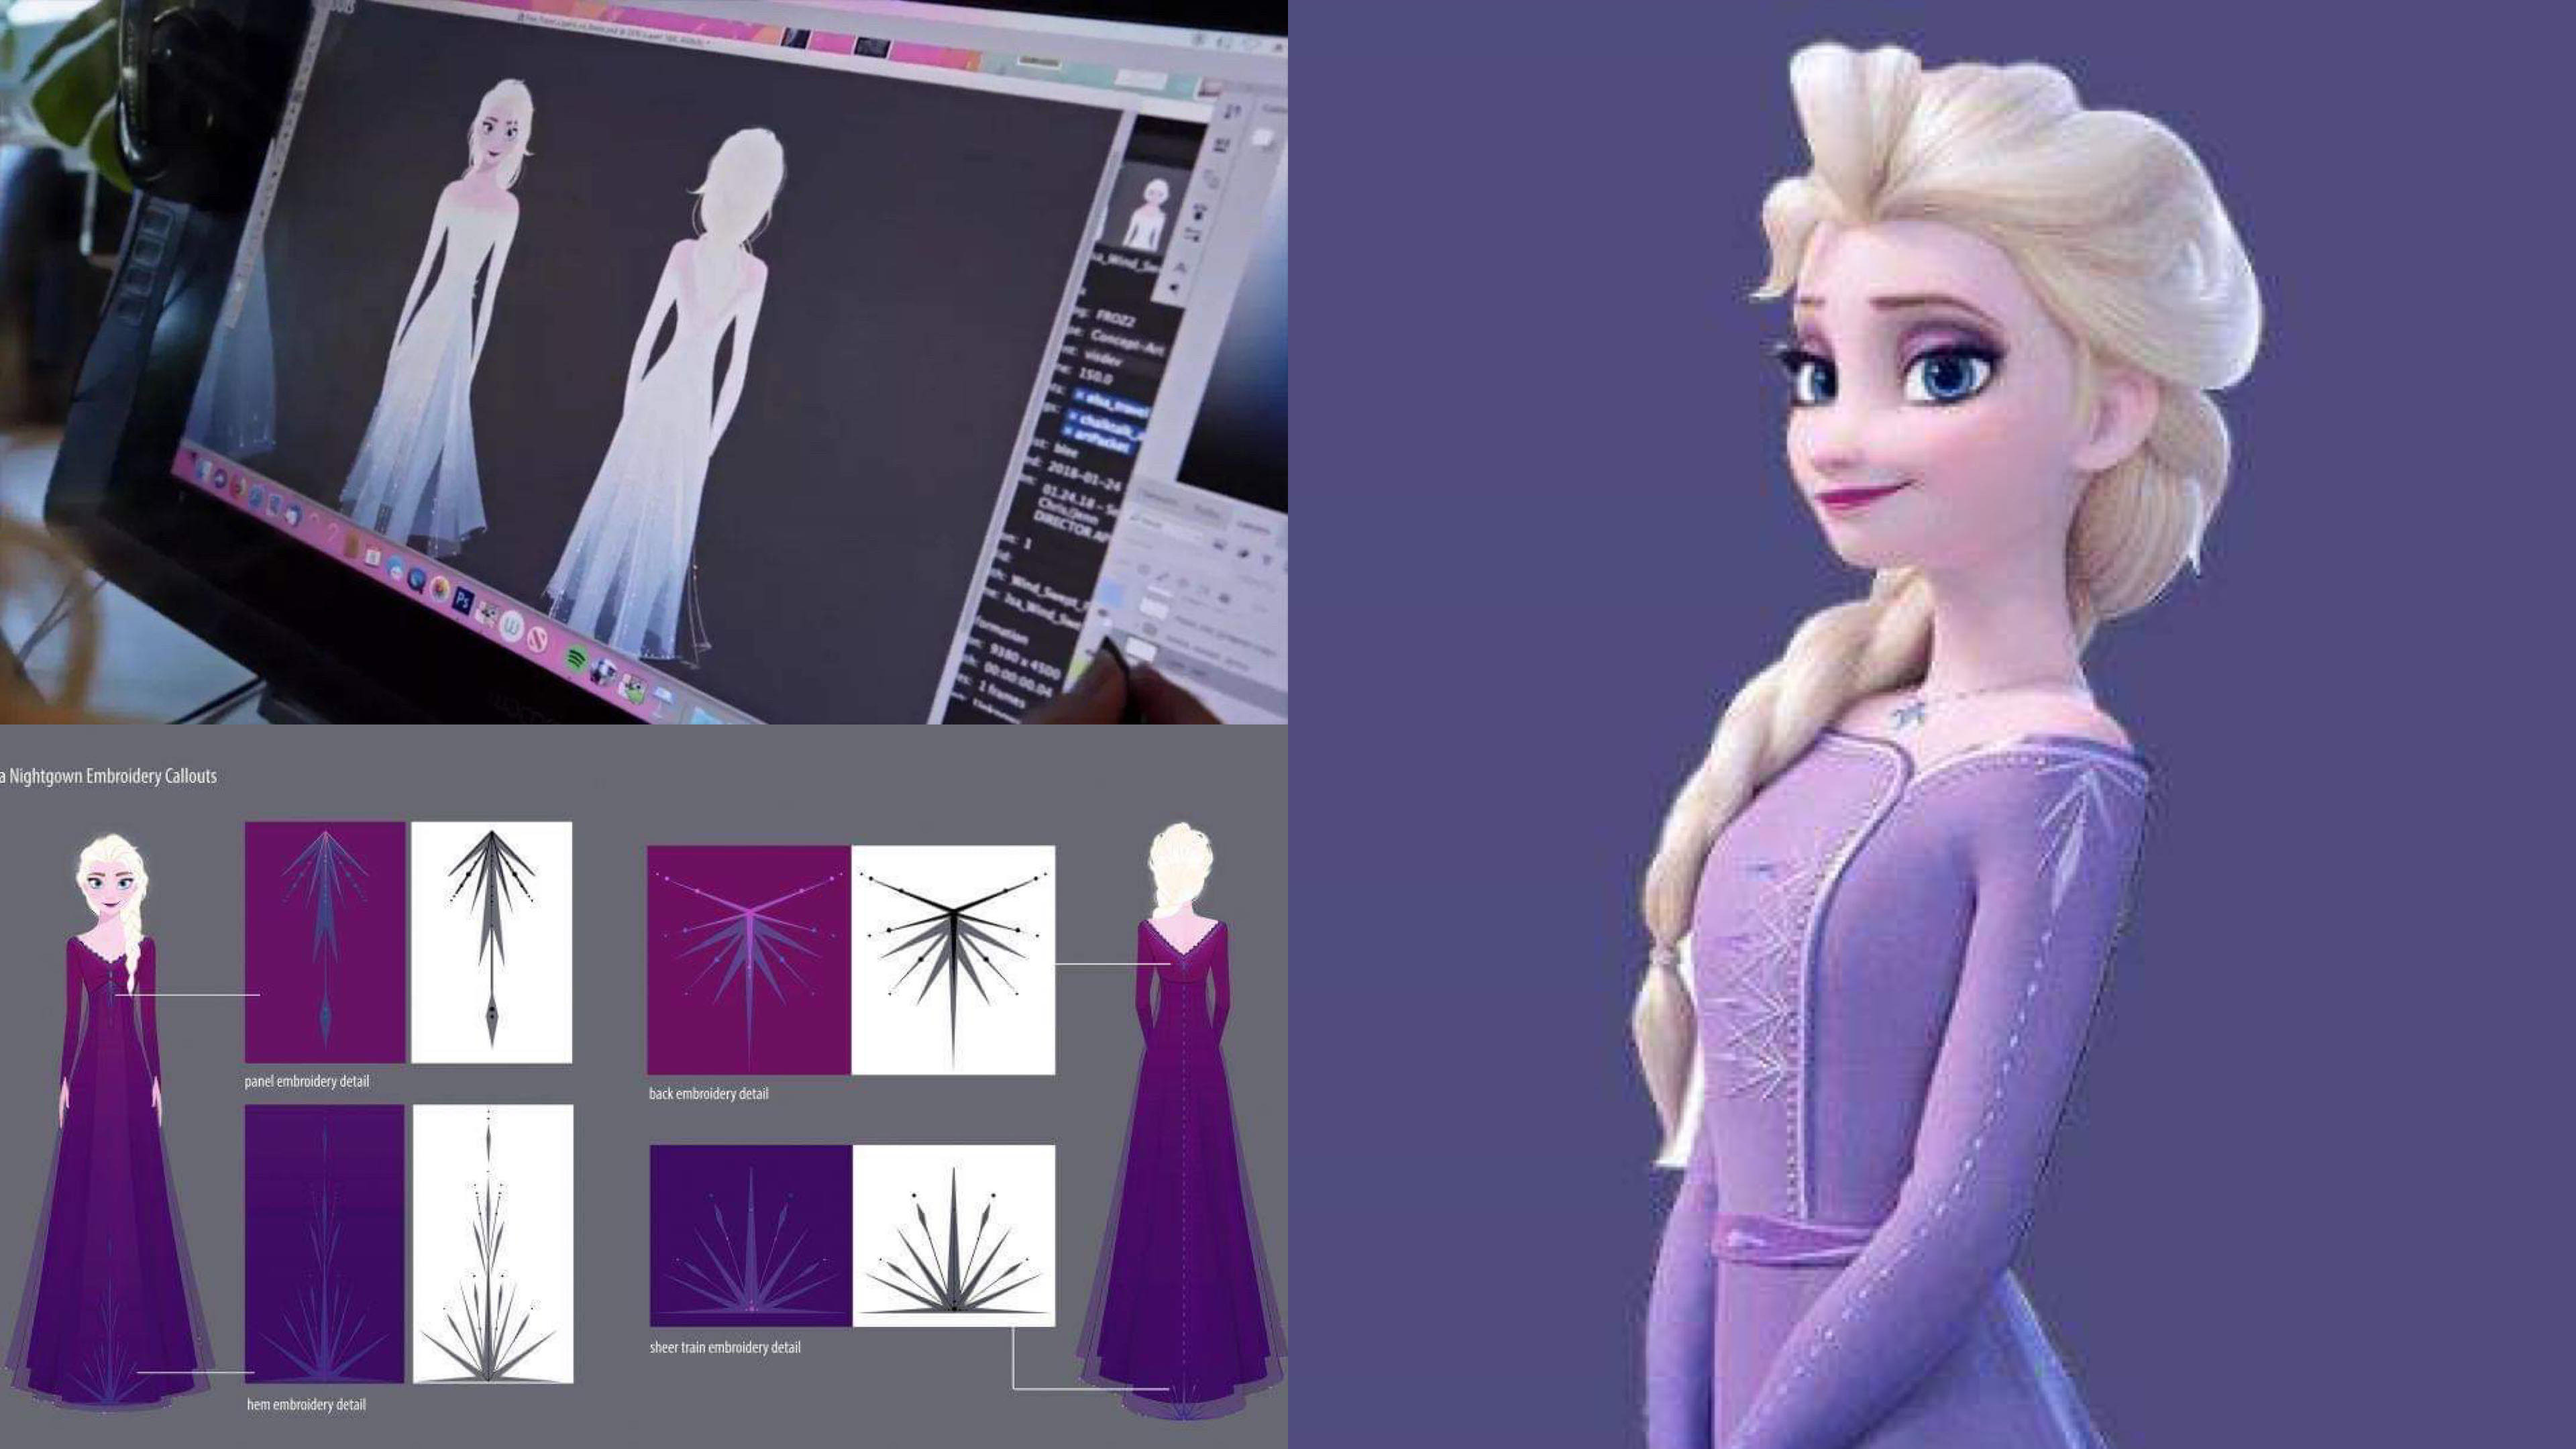 《冰雪奇緣2》Elsa 的服裝竟然「暗藏故事玄機」，難怪足足花了 7 年才完成續集… – 我們用電影寫日記